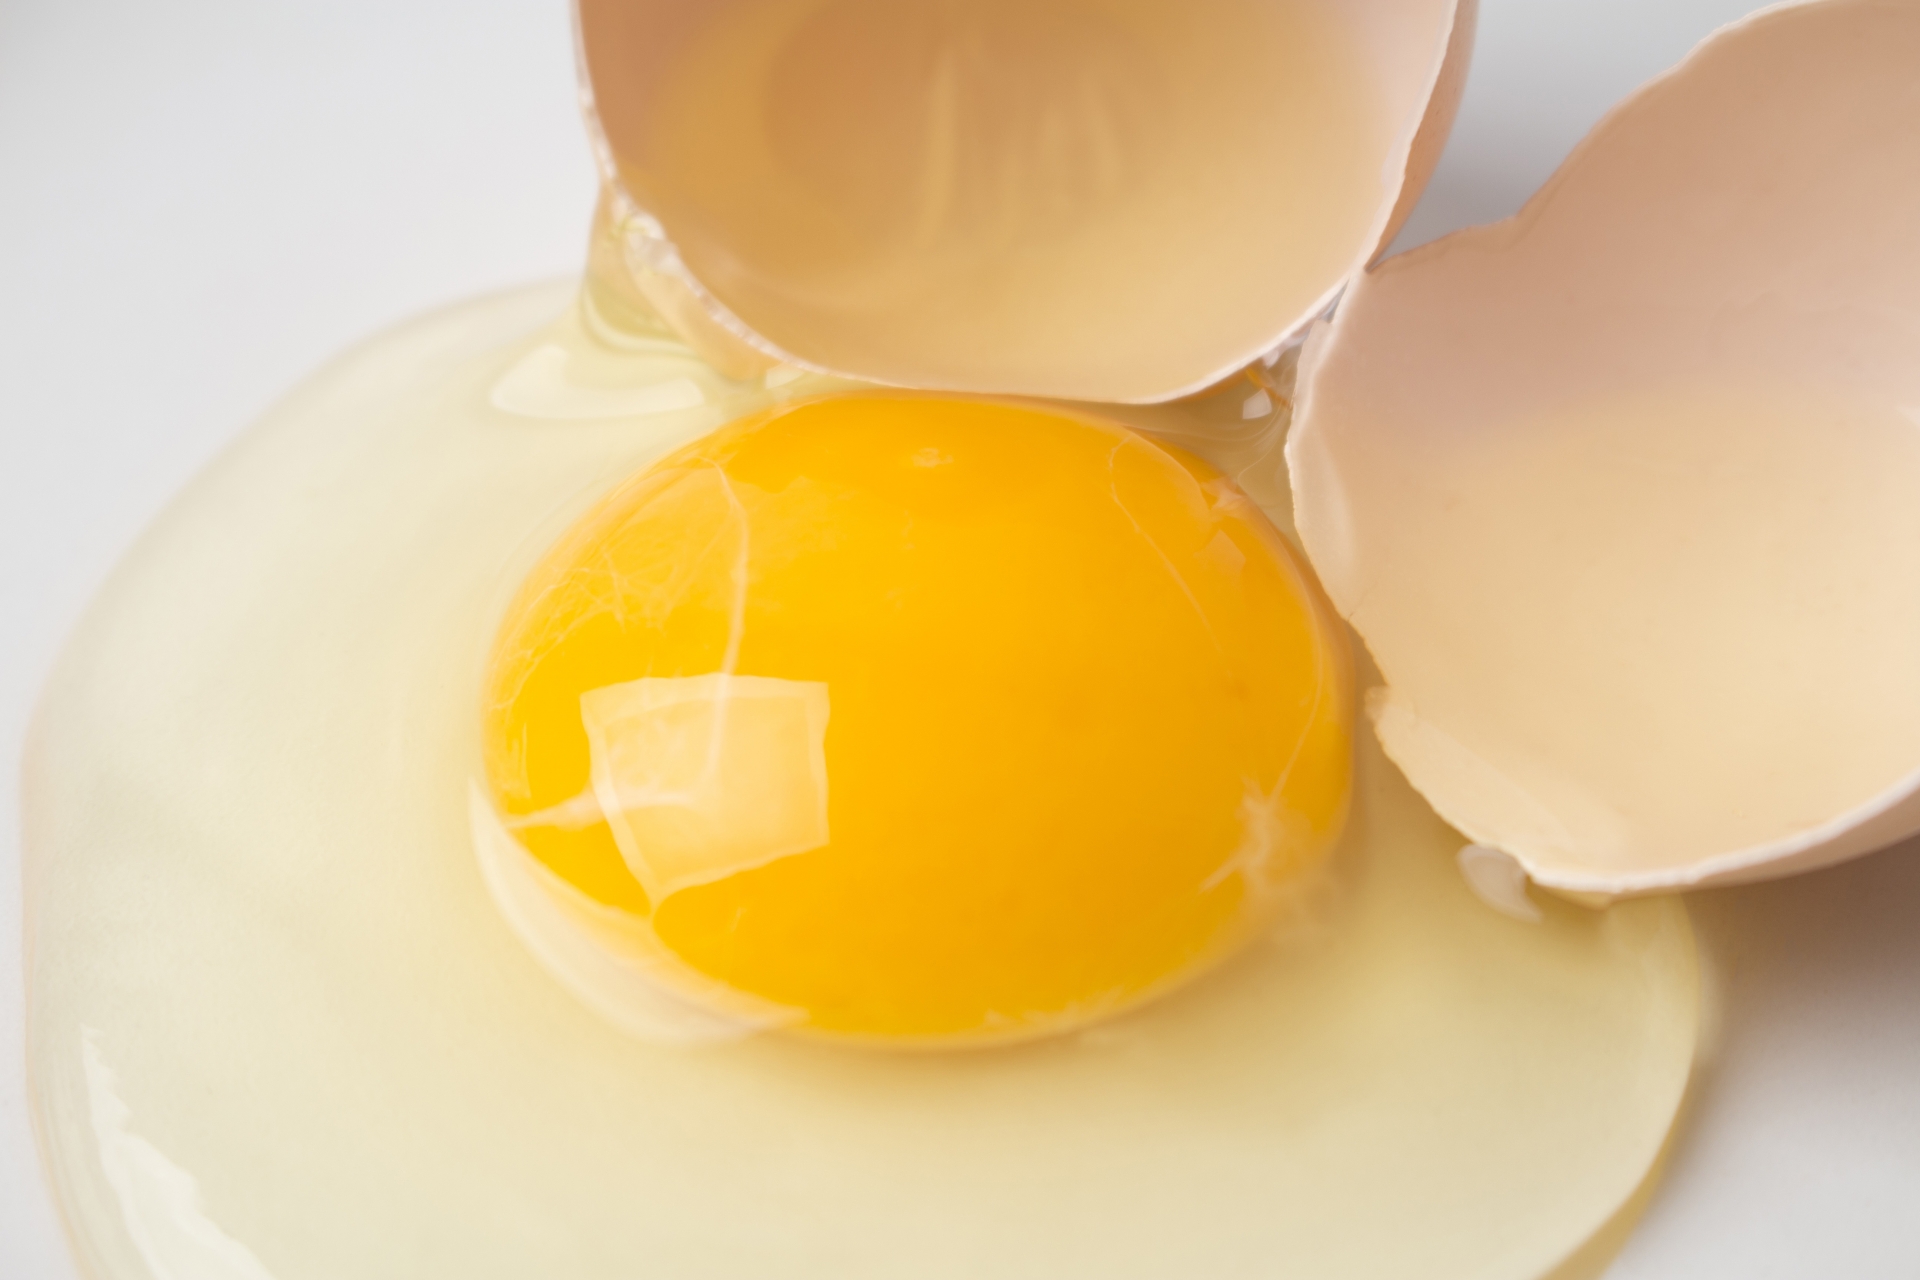 卵の中から卵 生卵の中から殻付きの小さい卵が出てきてビックリした朝 ミズタマブログ